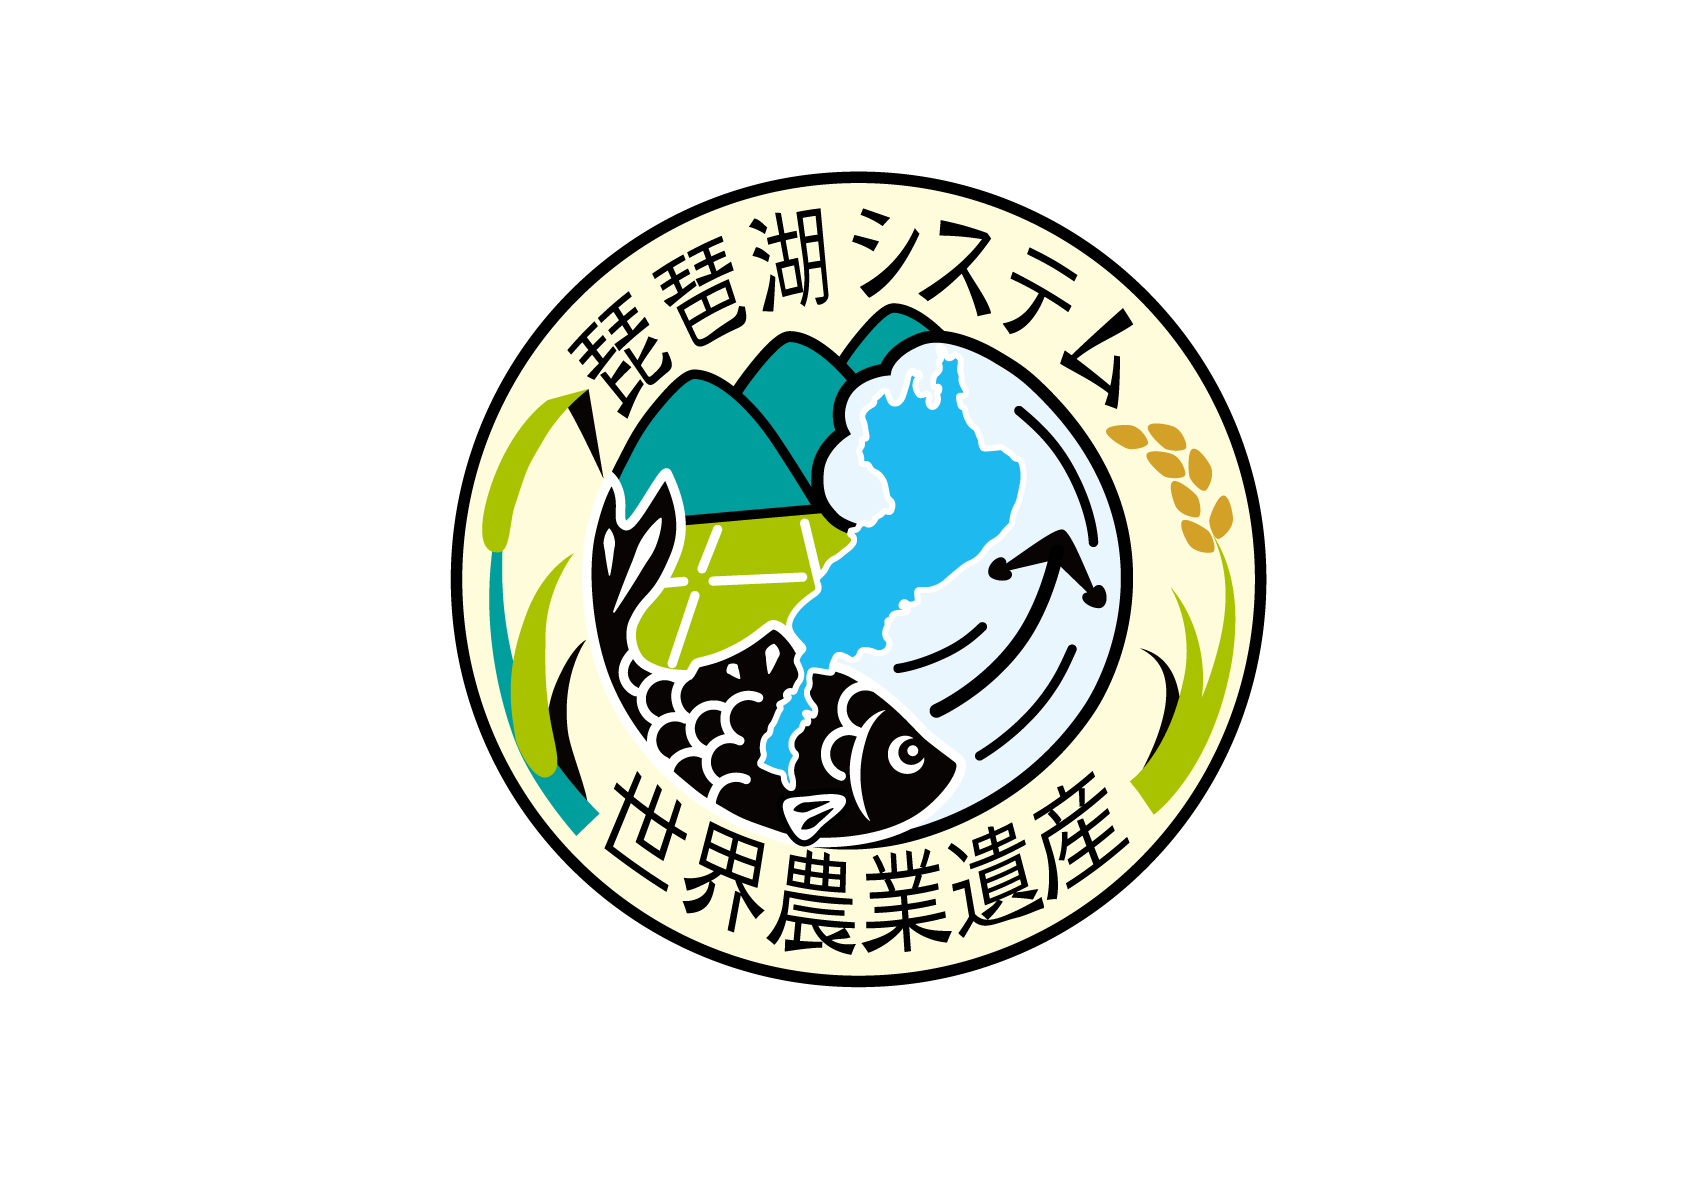 世界農業遺産「琵琶湖システム」ロゴマーク